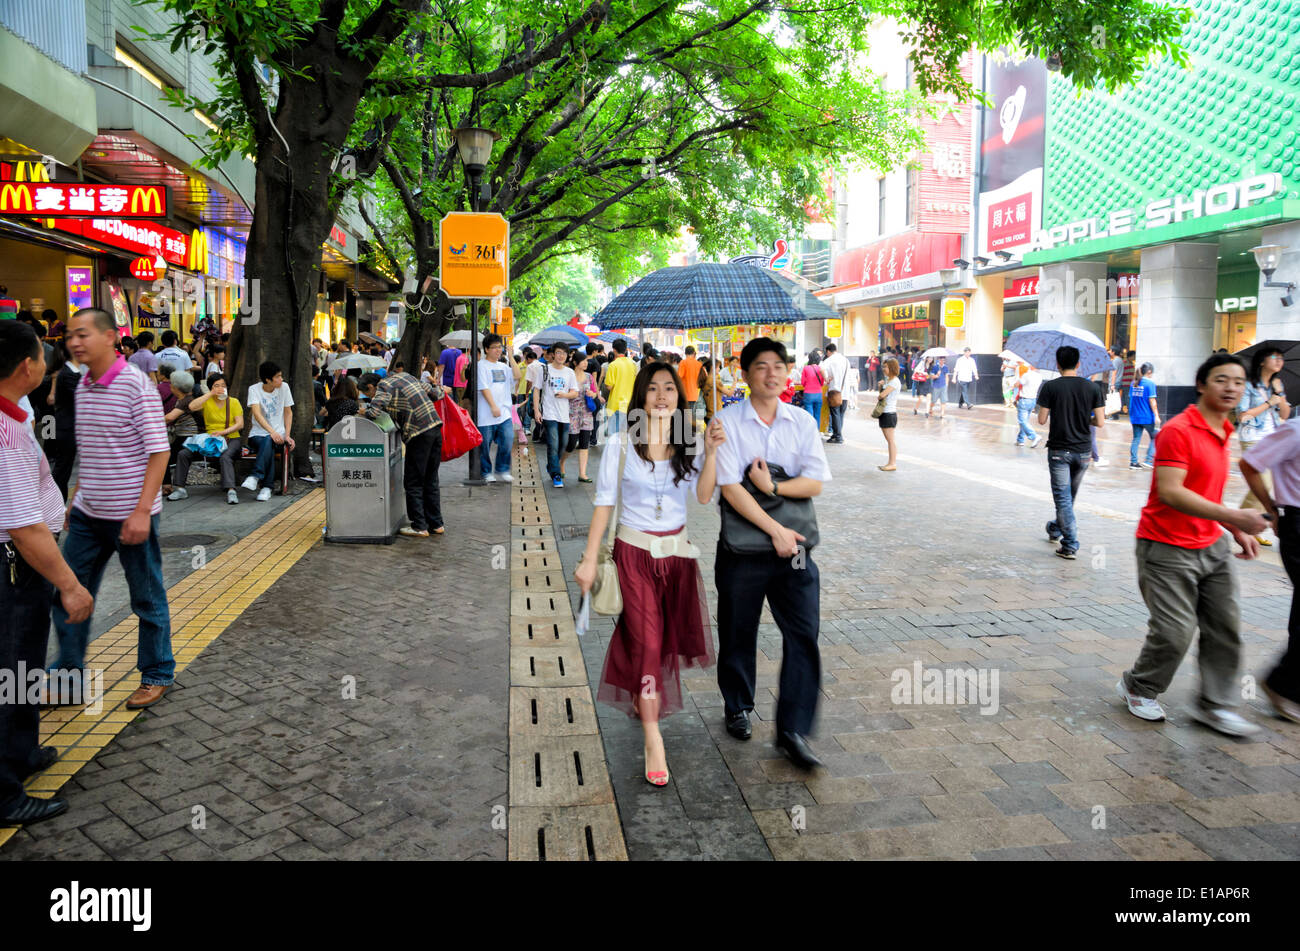 Consumismo chino: los compradores jóvenes pasee por una importante calle comercial de una gran ciudad en la China moderna. Beijing Lu (Beijing, Guangzhou Road). Foto de stock